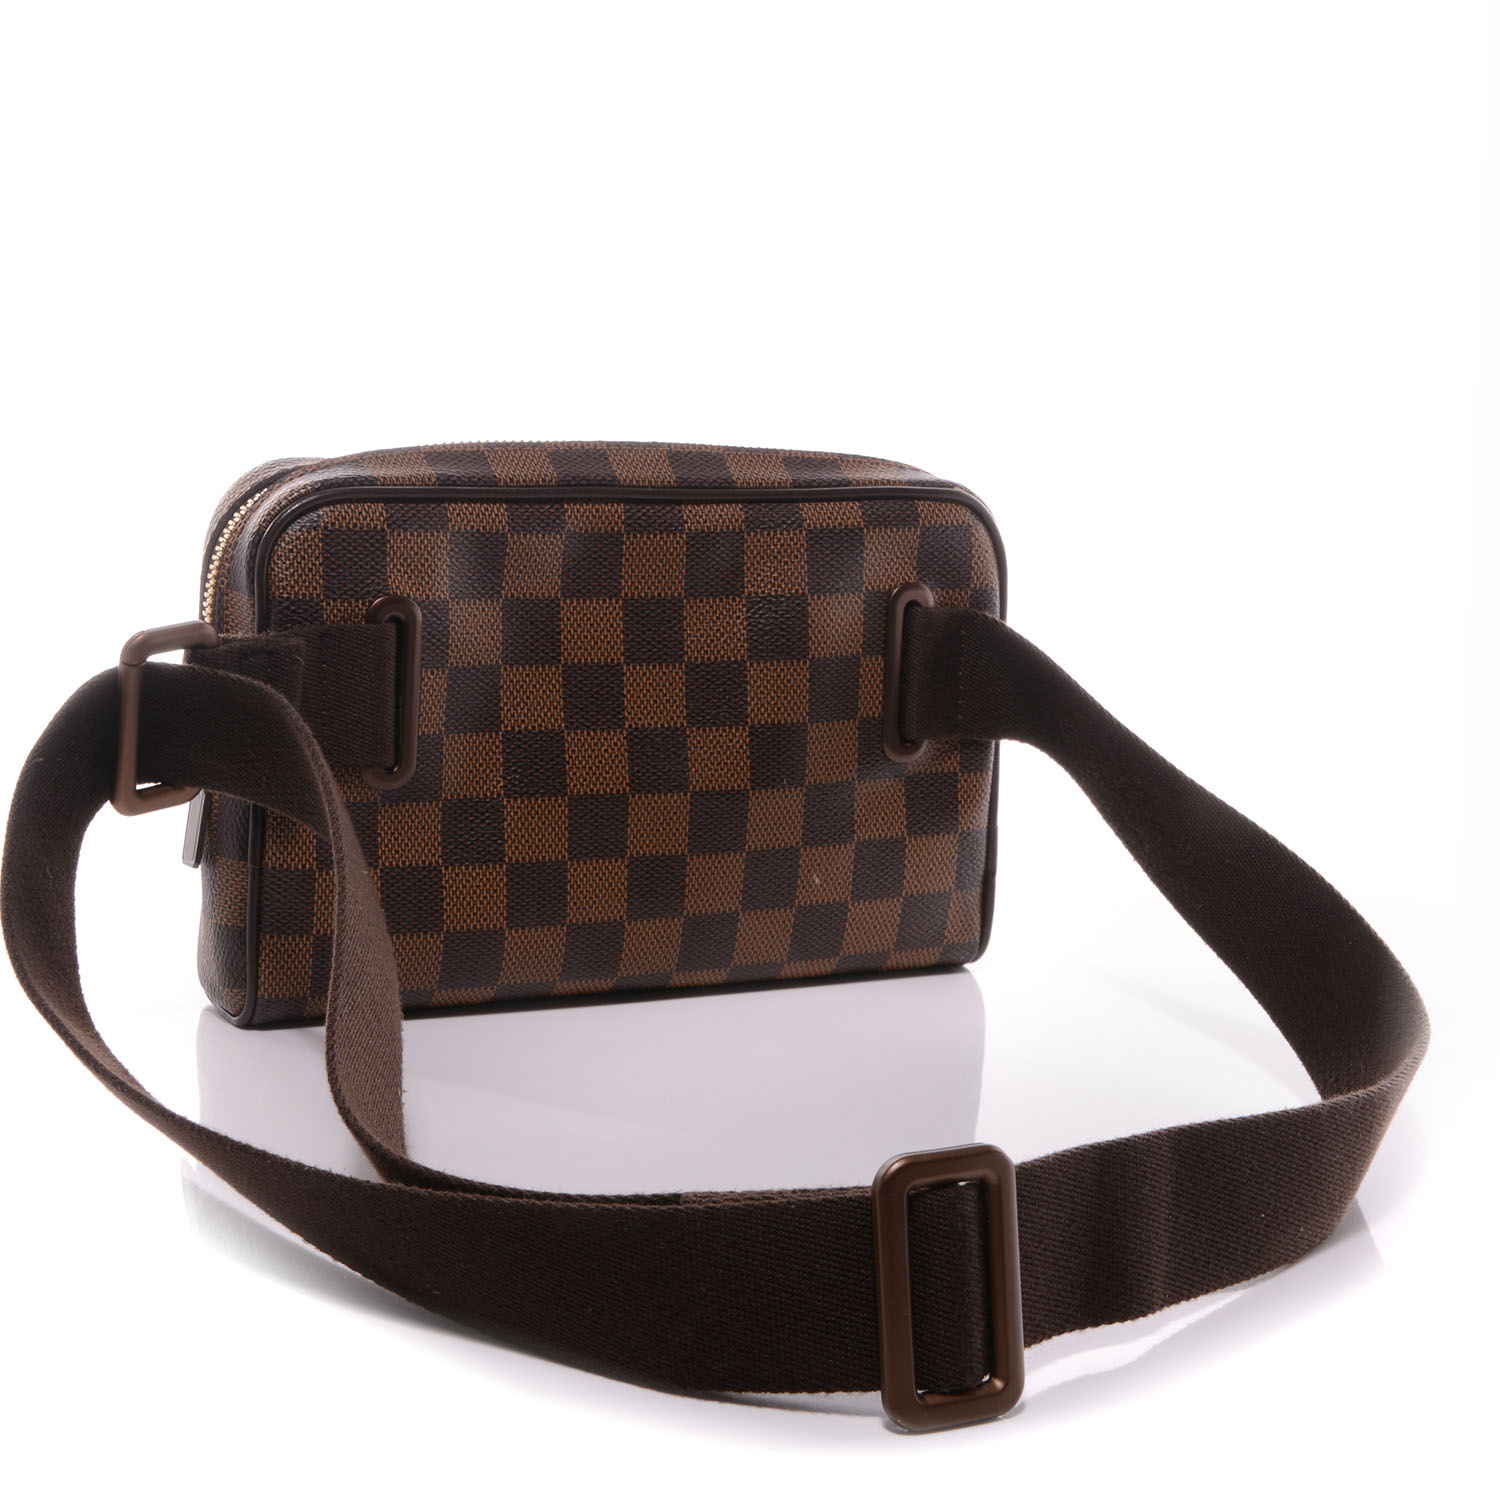 Louis Vuitton Damier Ebene Brooklyn Bum Bag A World Of, 59% OFF